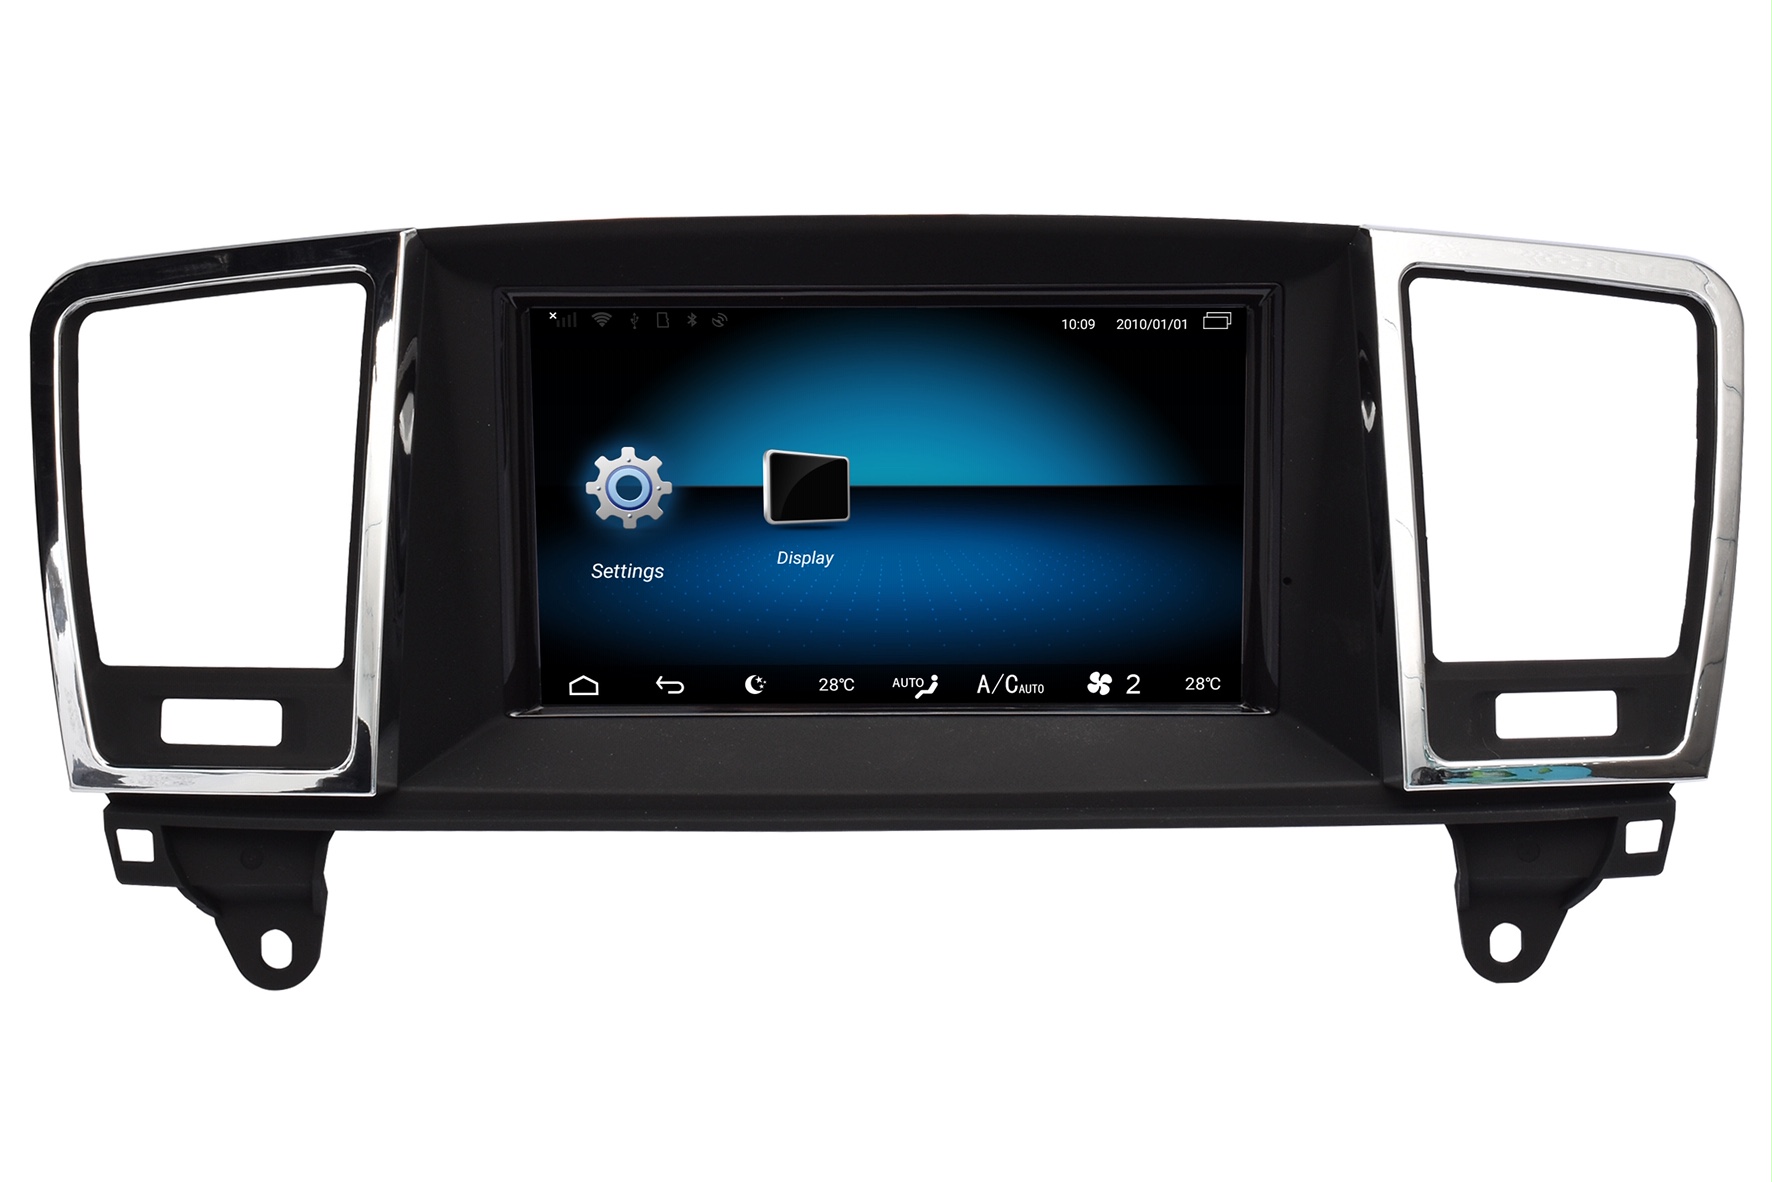 Mercedes ML navigatie vanaf 2012 carkit android 12 met apple carplay en android auto